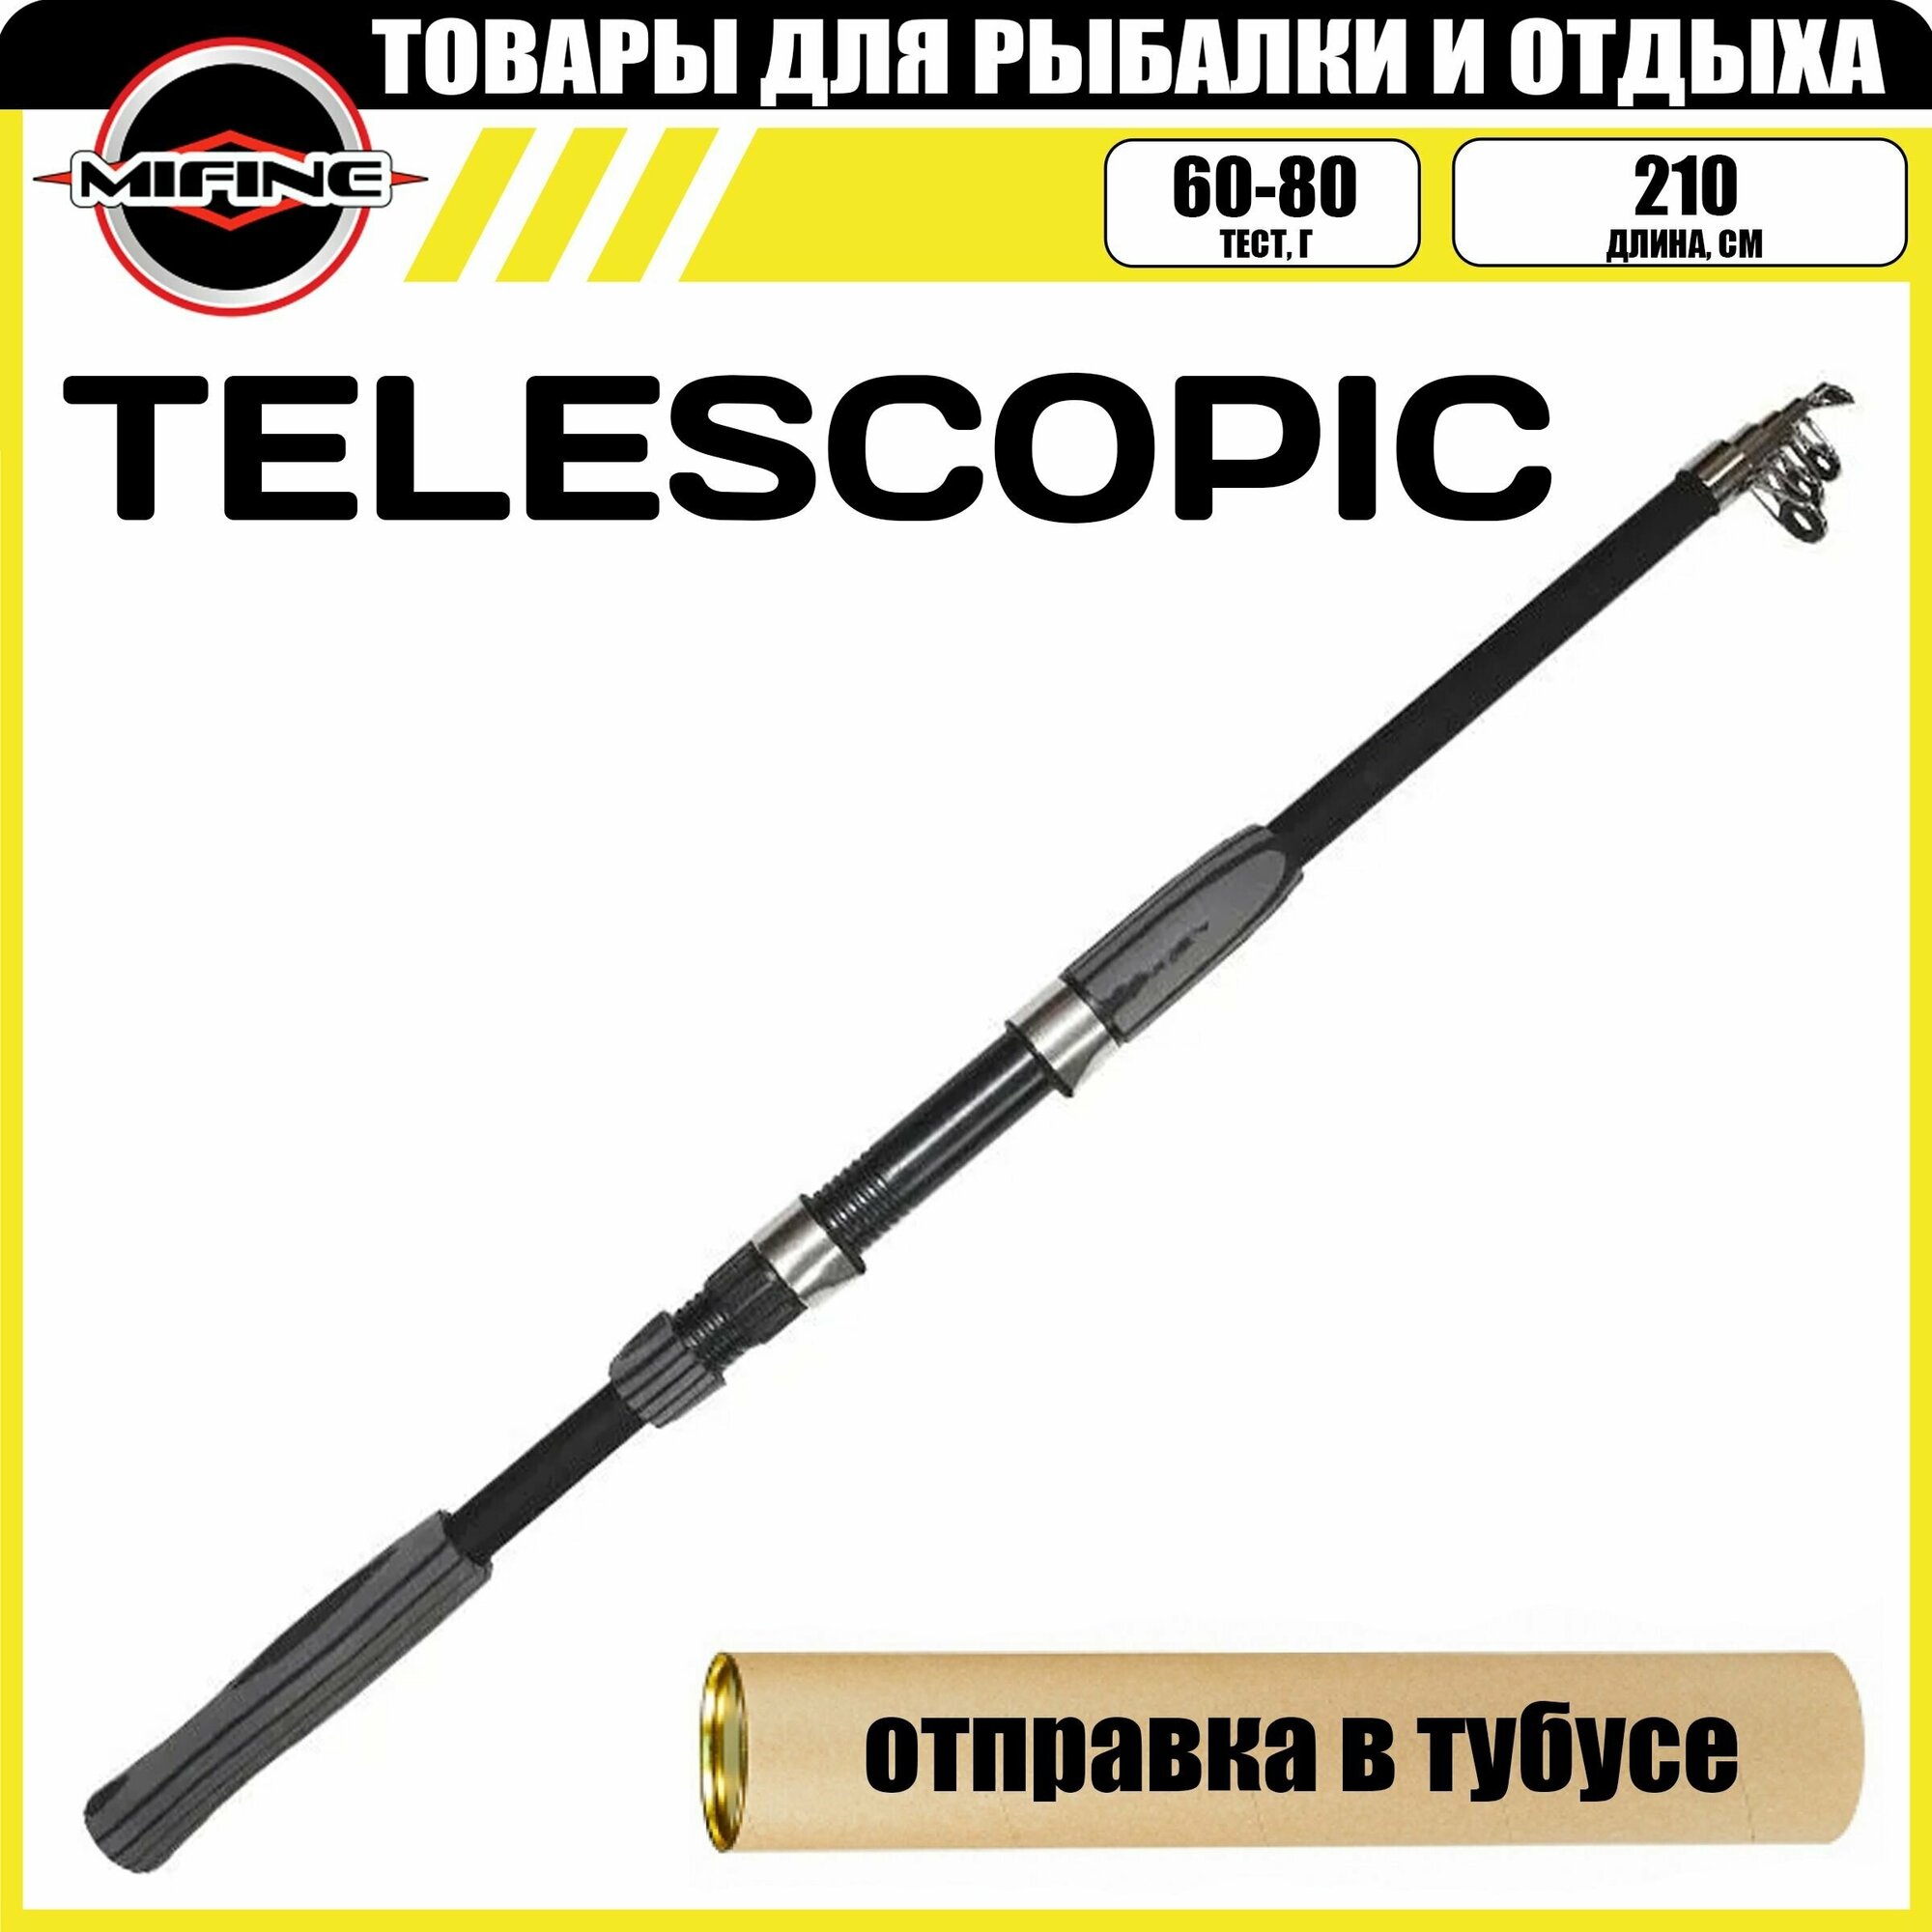 Спиннинг MIFINE TELESCOPIC телескопический 2.1м (60-80гр), рыболовный, удилище для рыбалки